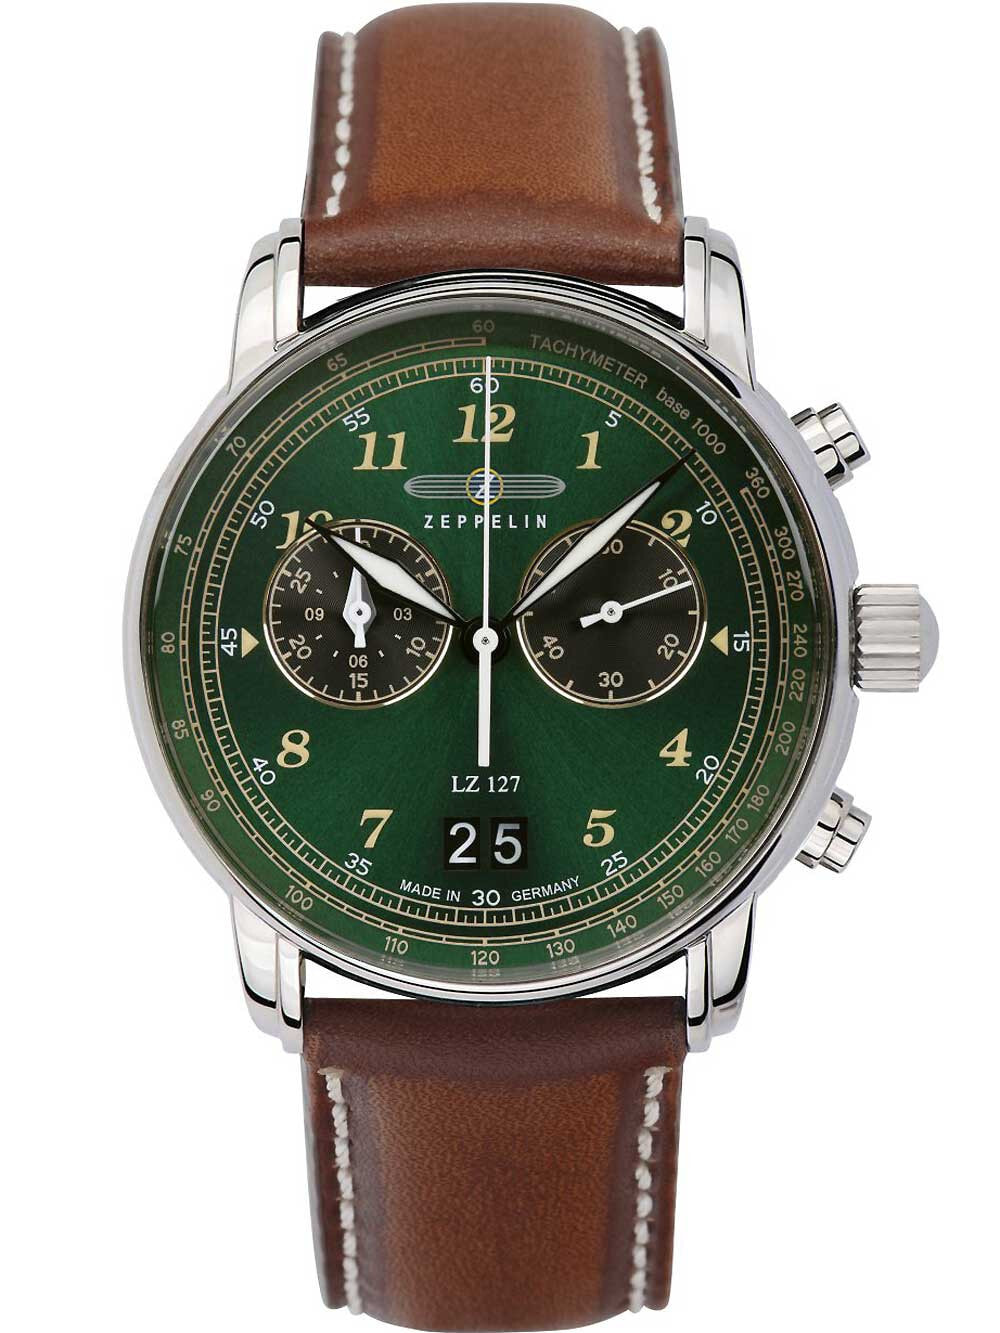 Мужские наручные часы с коричневым кожаным ремешком Zeppelin 8684-4 Graf Zeppelin LZ127 big-date chrono 41mm 5ATM